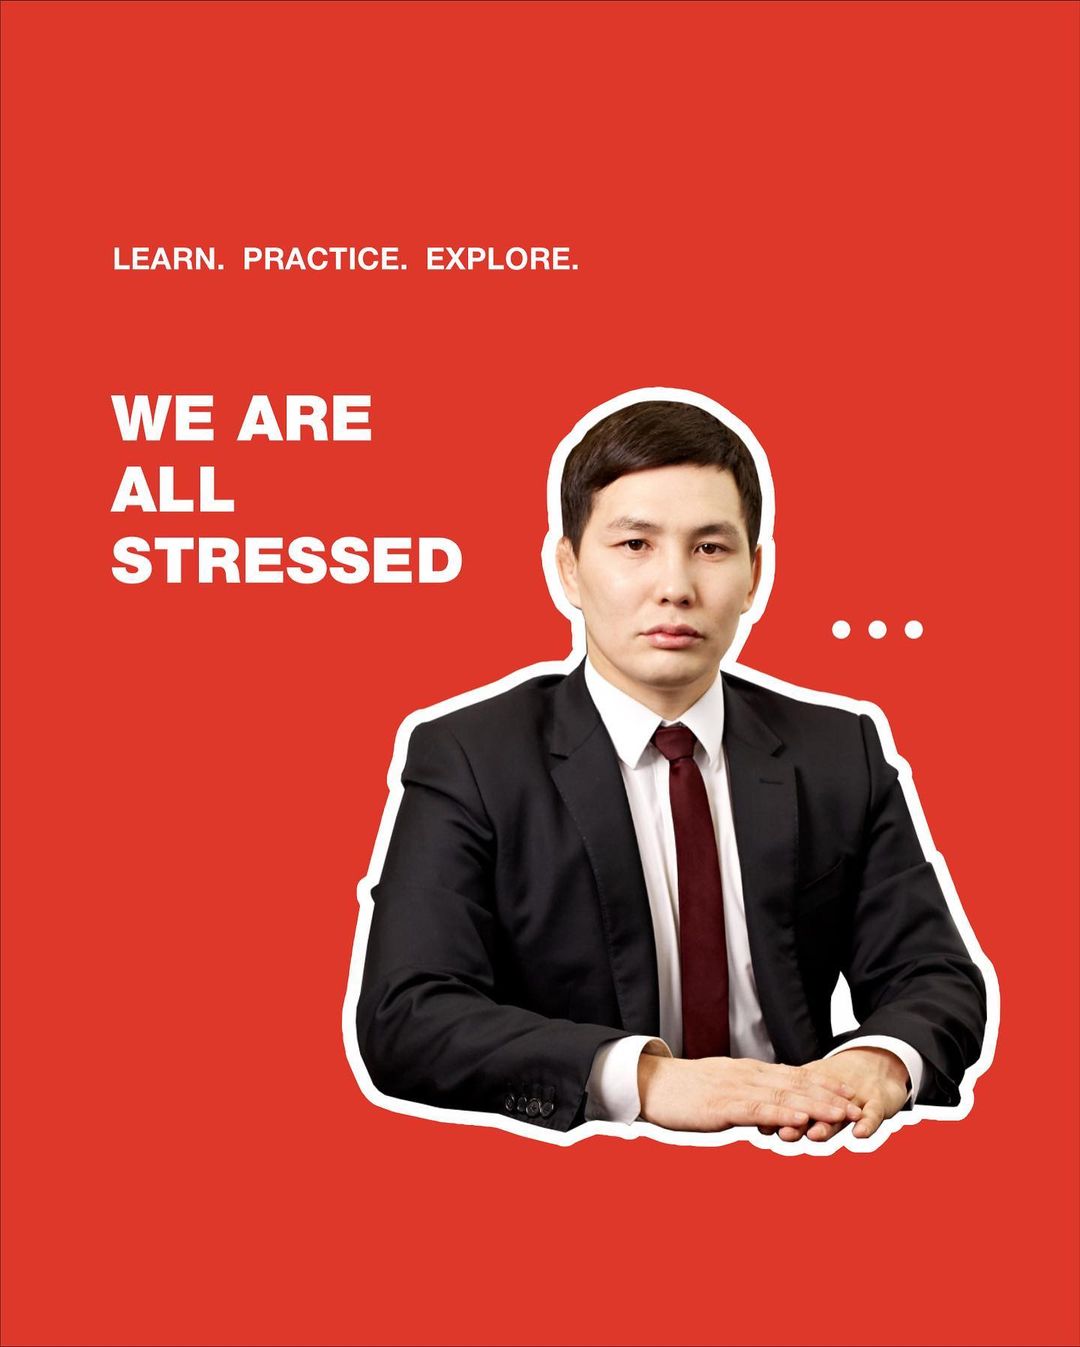 Школа "Интенсус" опубликовала фото Виктора Лебедева, пообещав подготовку к экзаменам без стресса